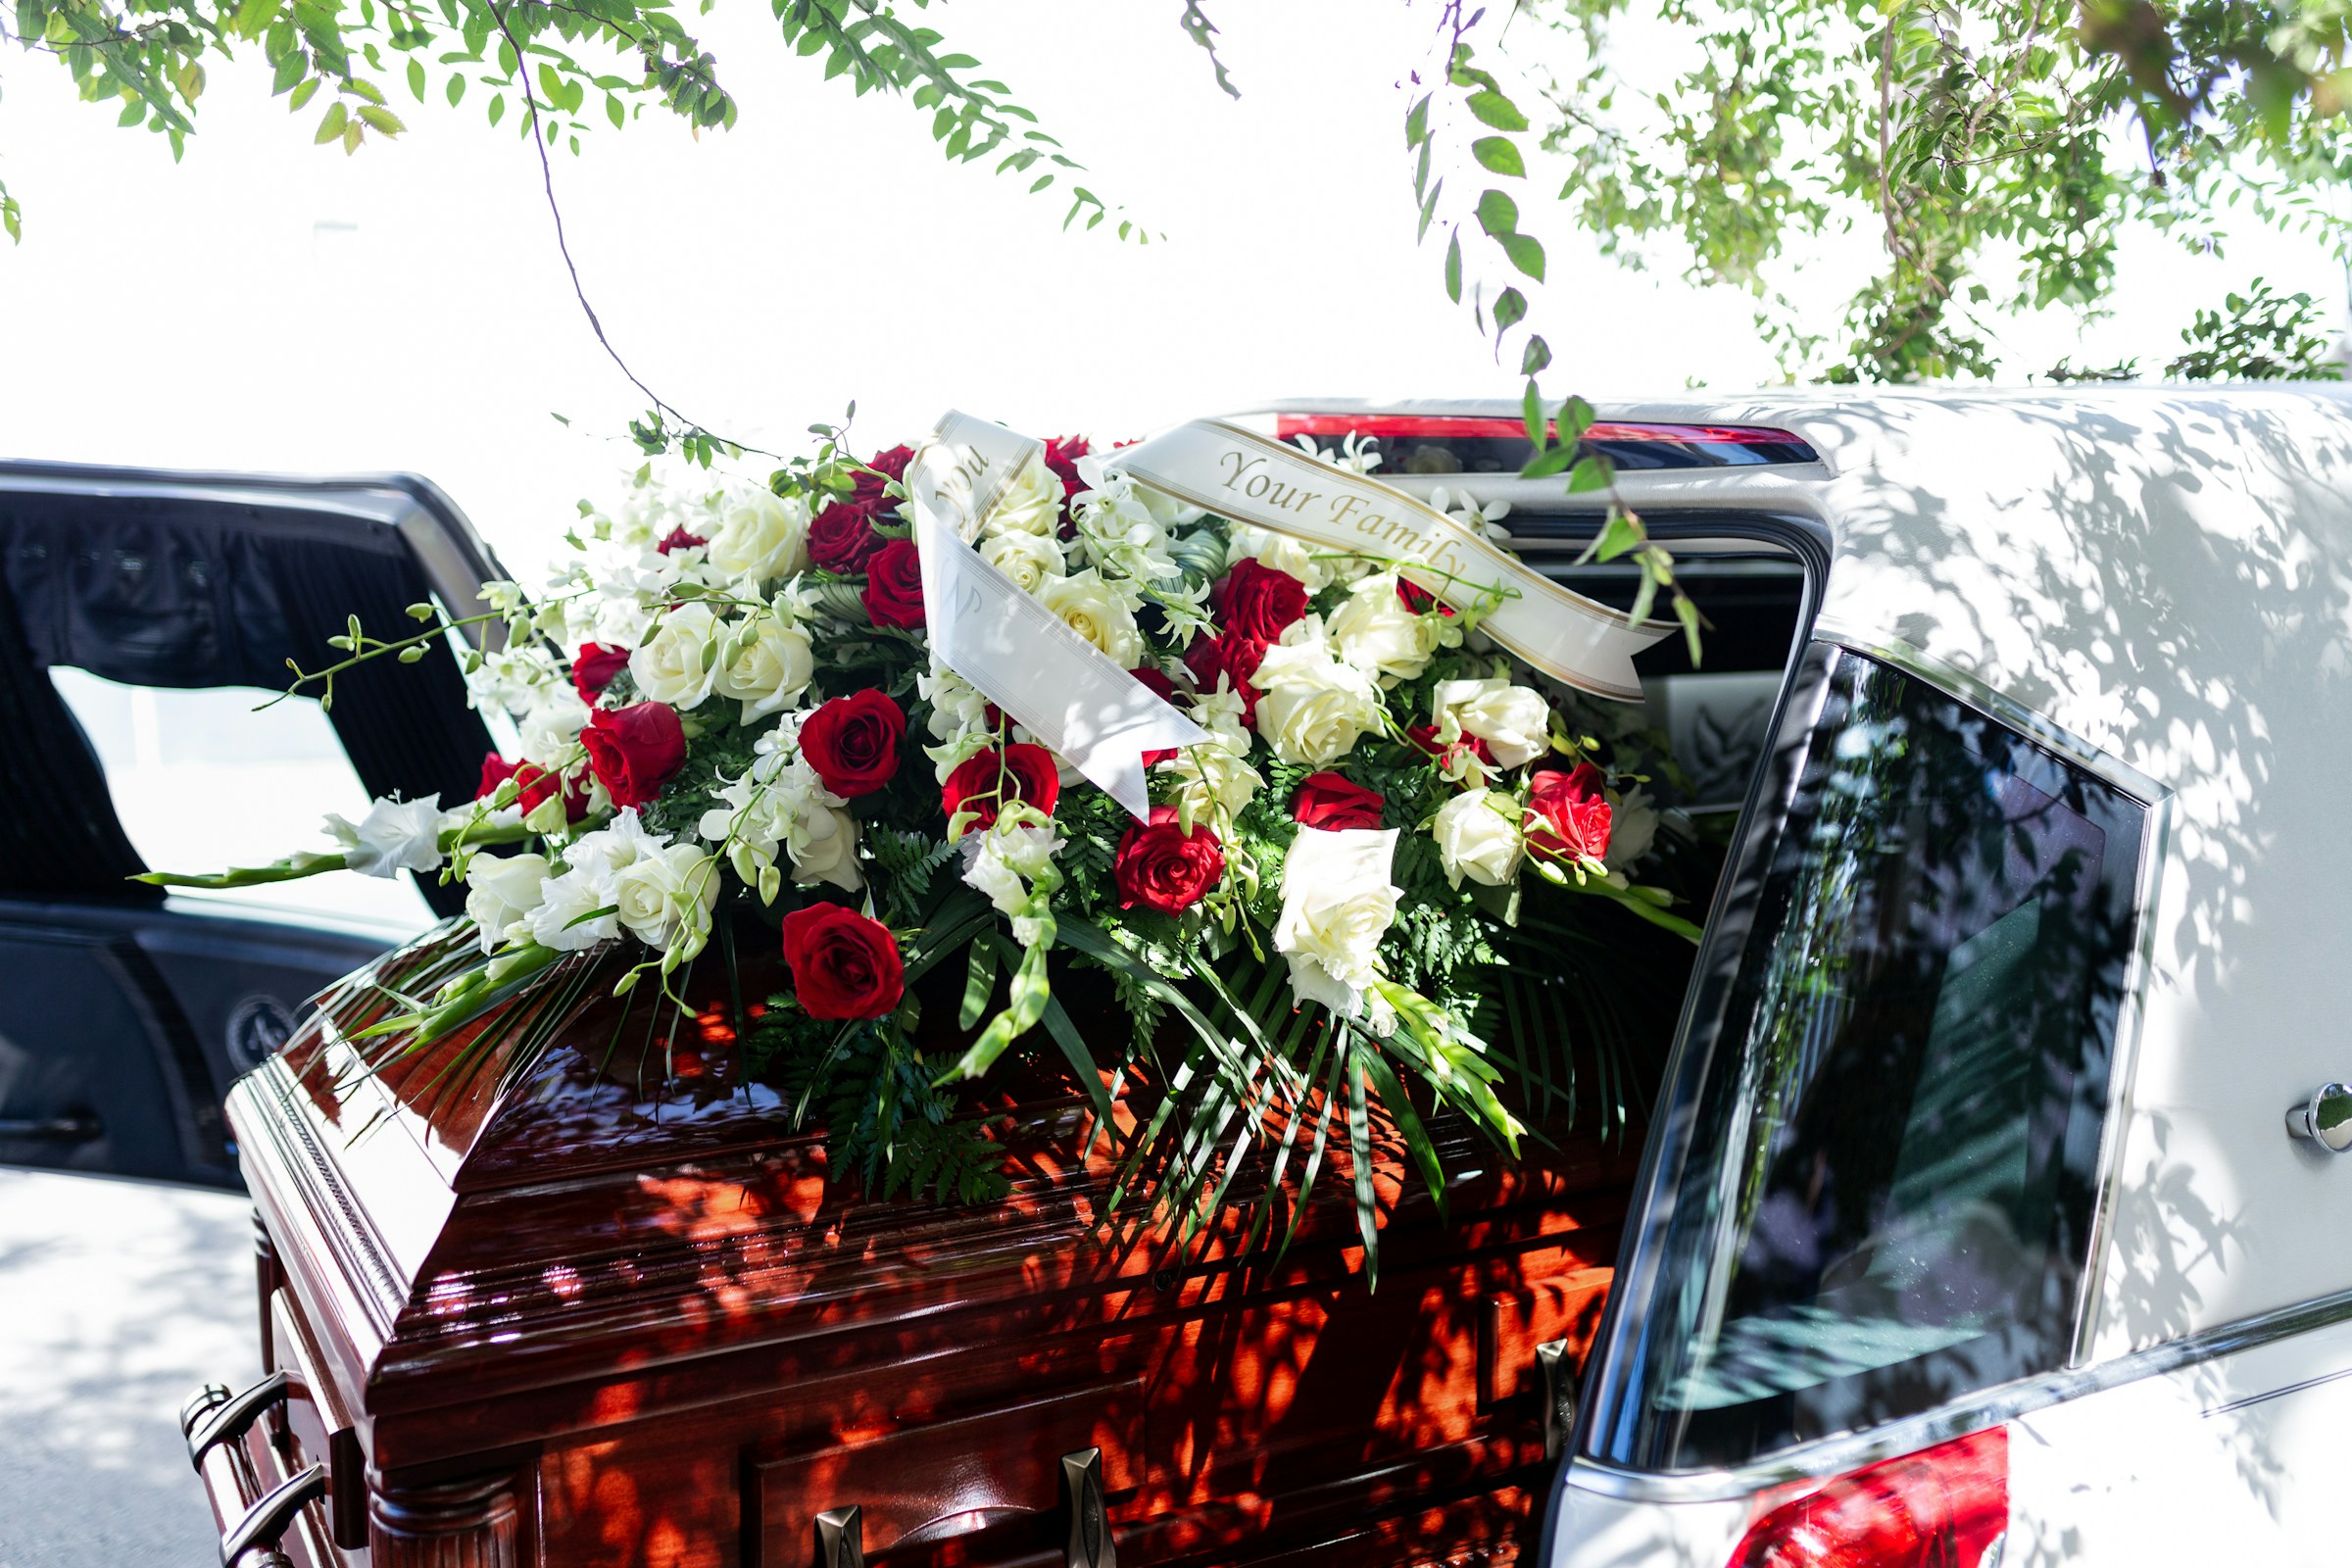 A brown coffin in a hearse | Source: Unsplash